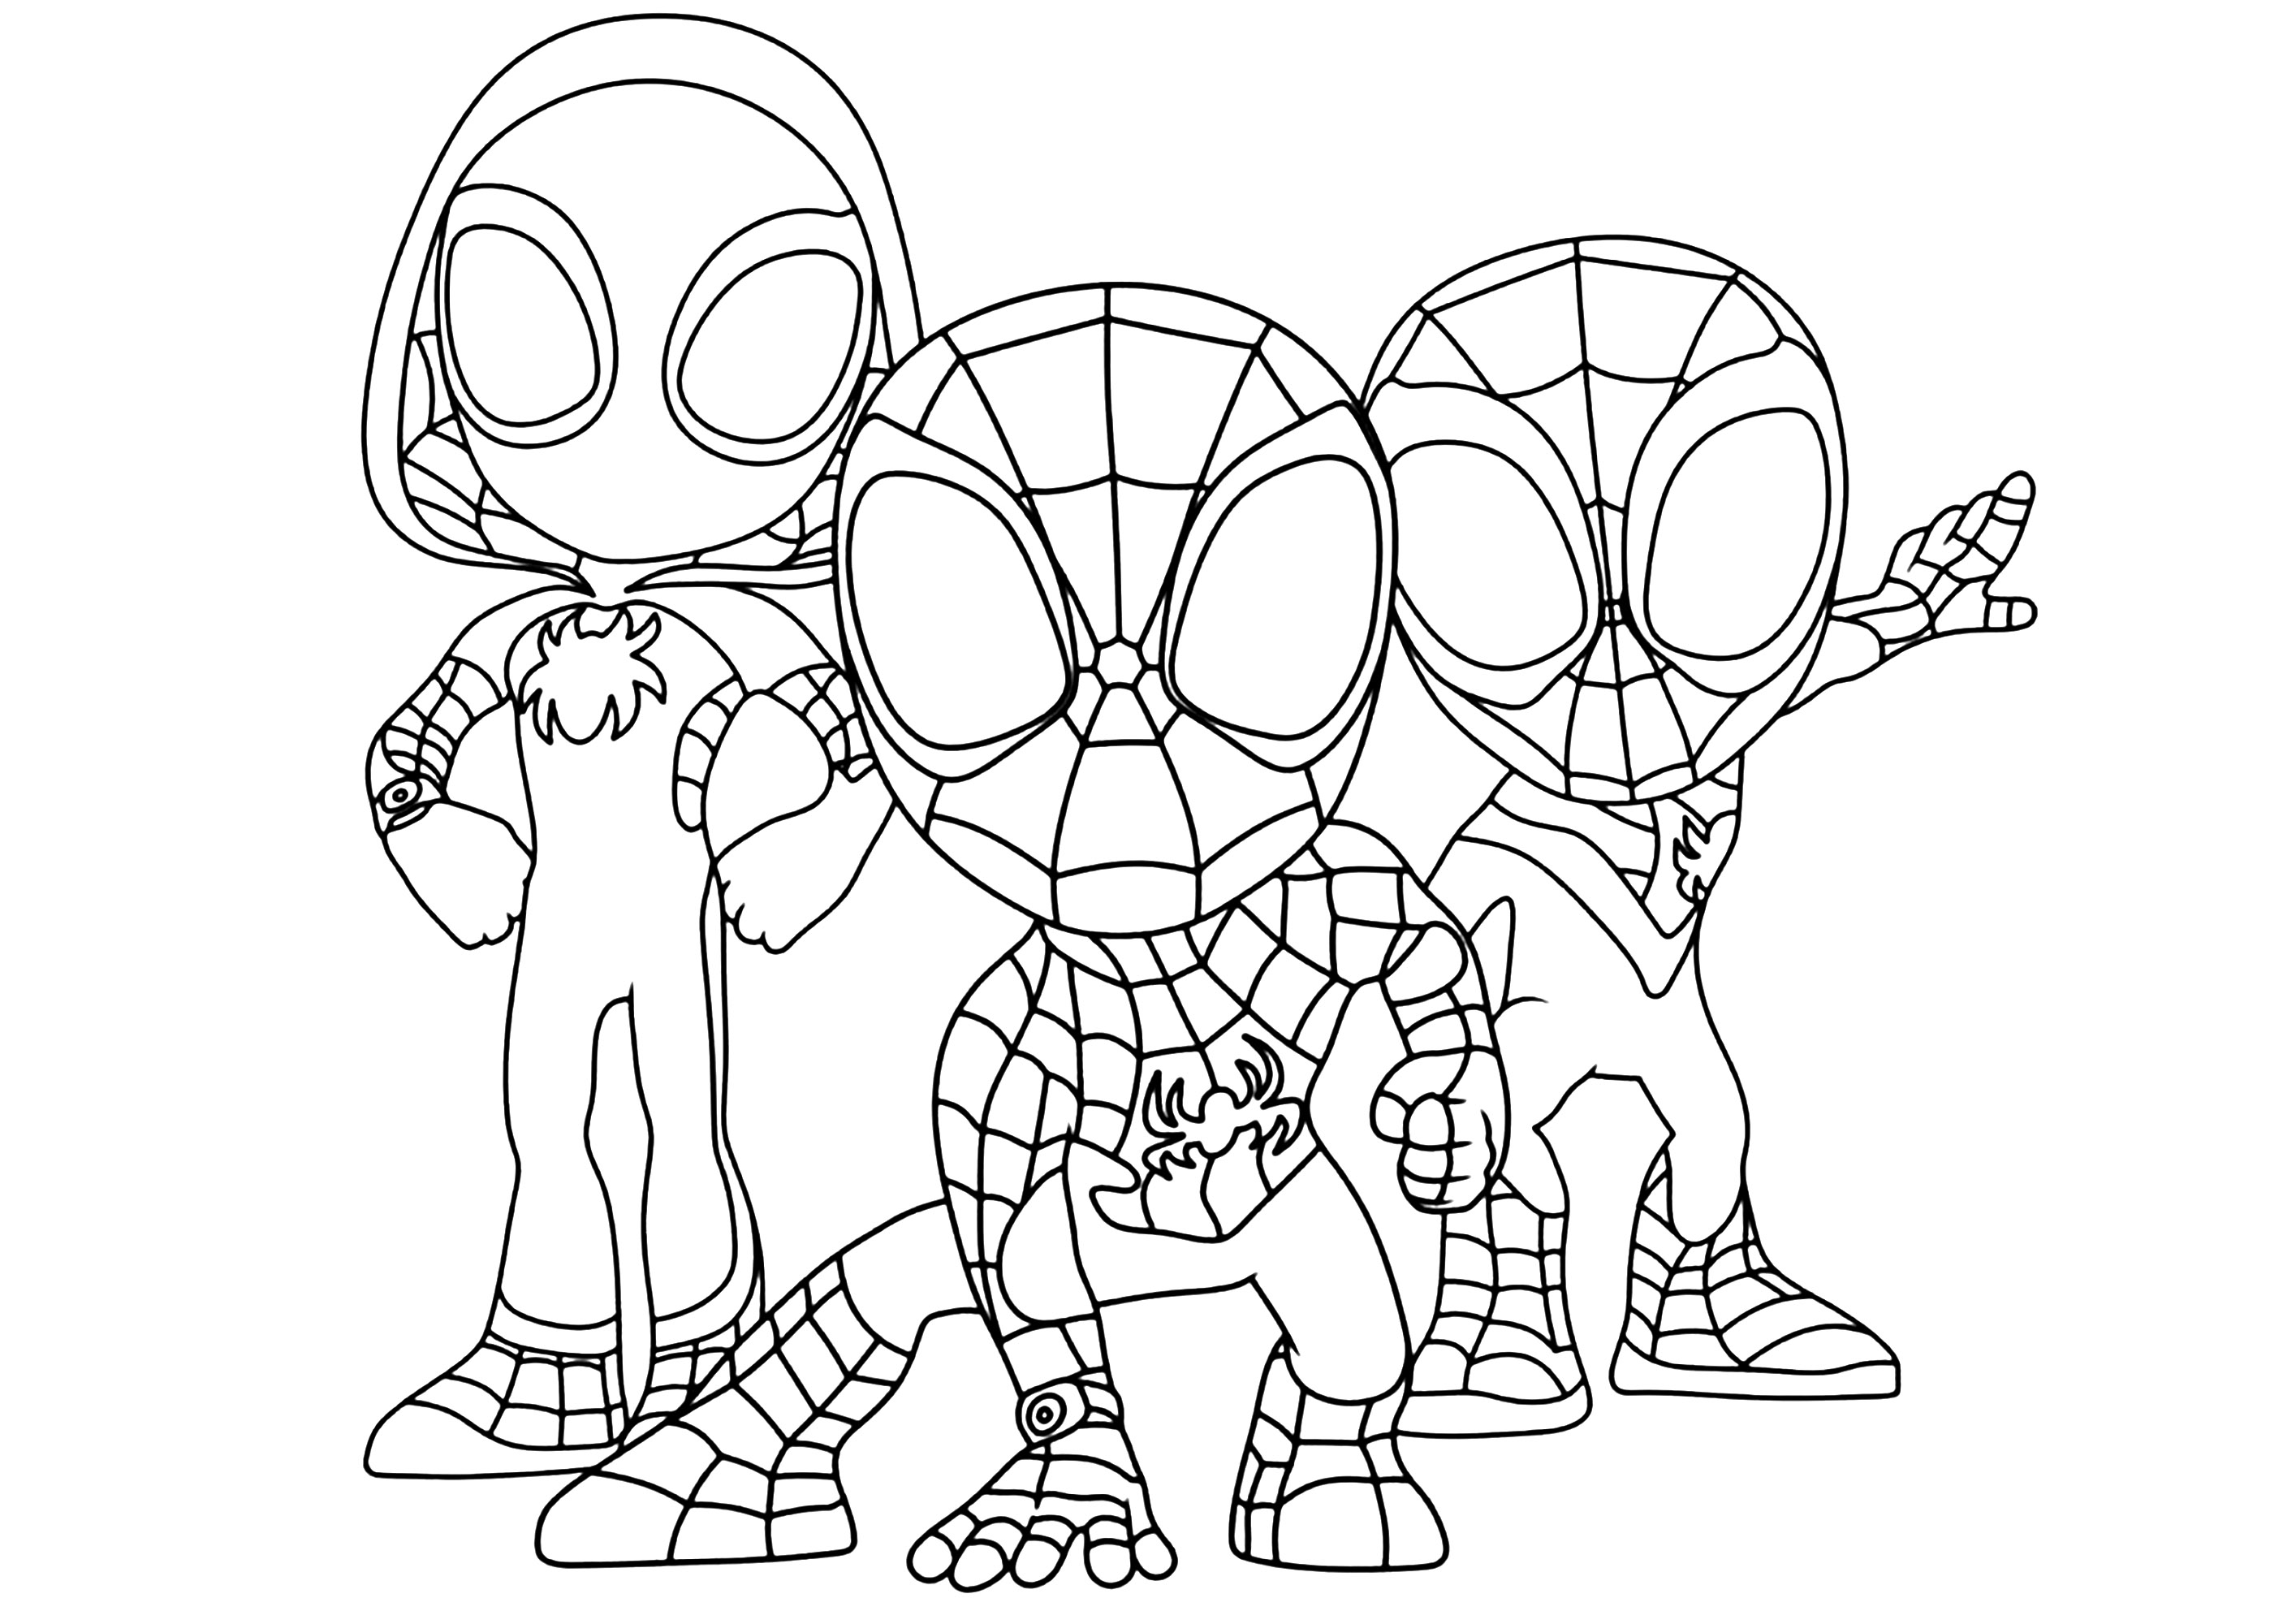 Personnages de 'New Generation' en mode Kawaii. Spider-Gwen et les deux versions de Spider-Man (Mike Morales et Peter Parker)